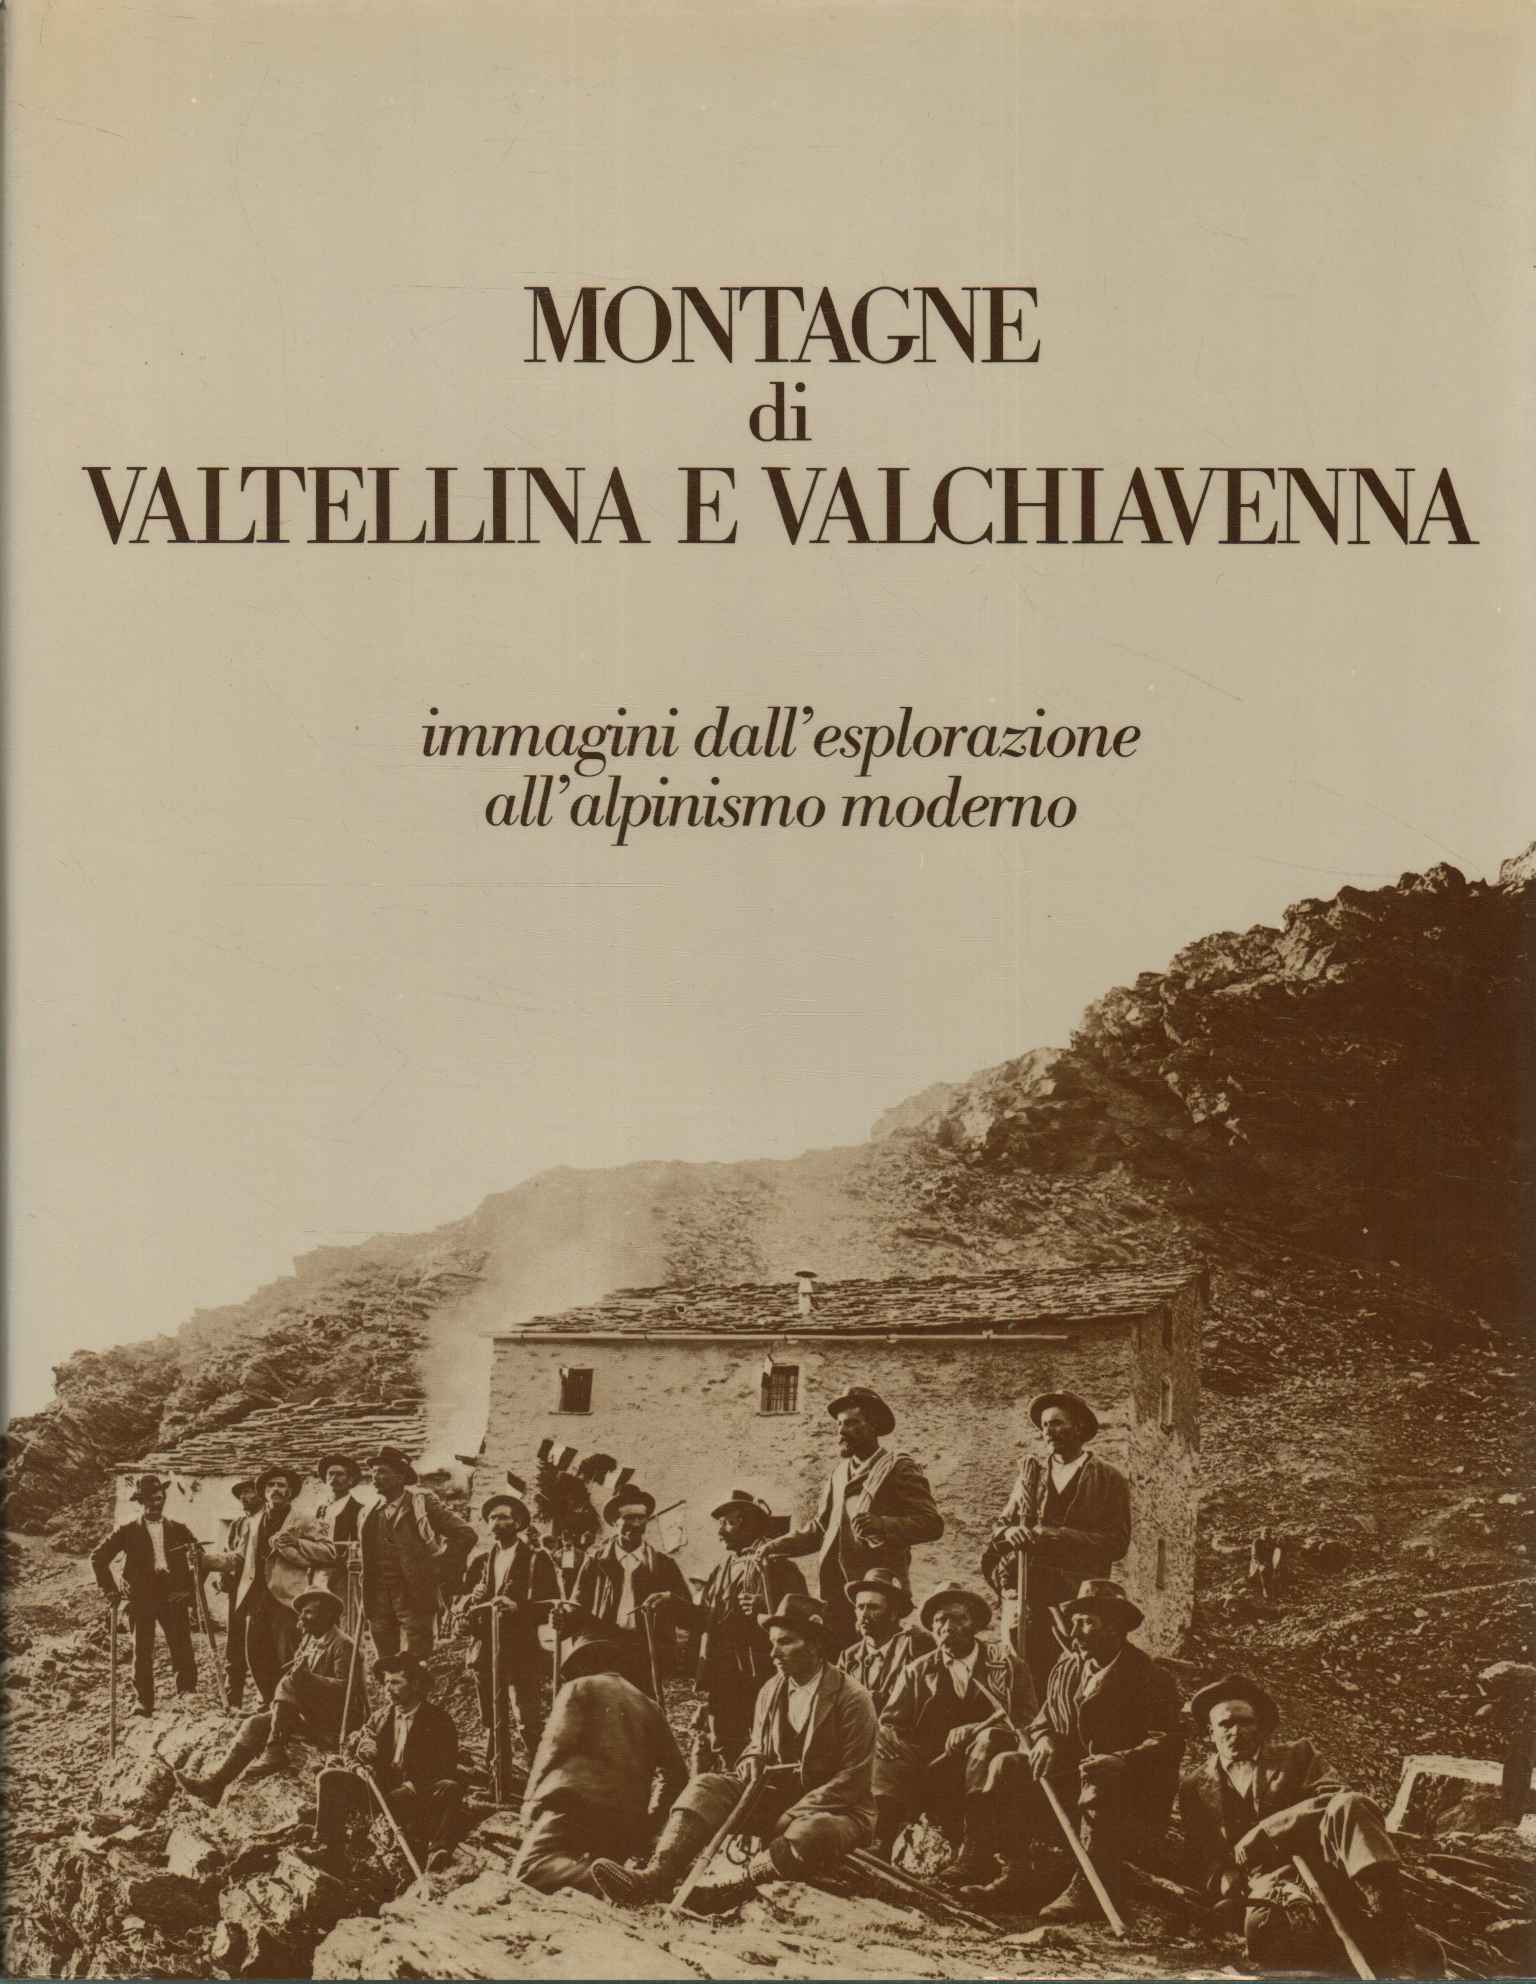 Mountains of Valtellina and Valchiavenna